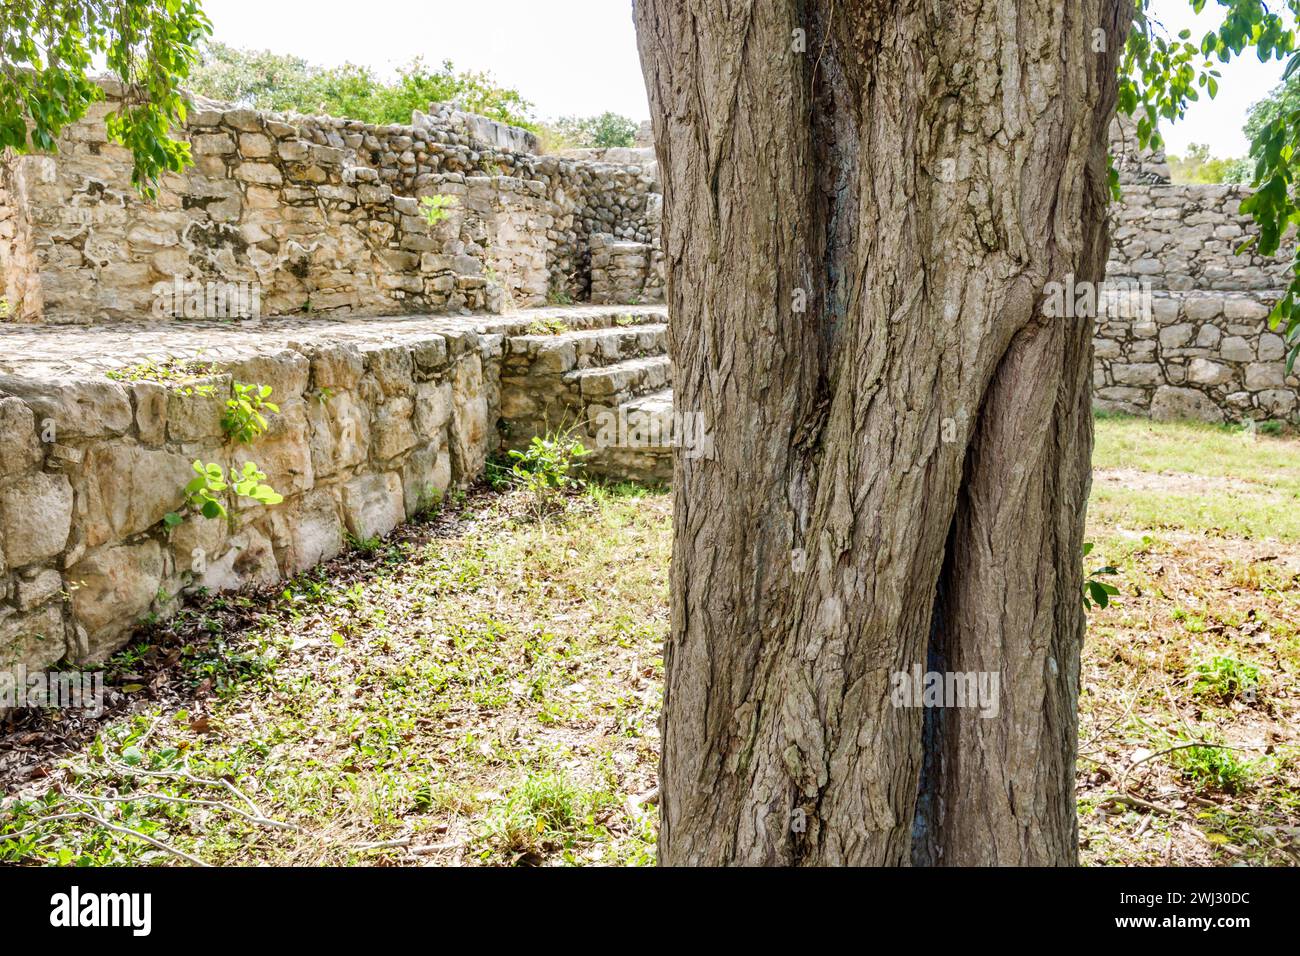 Merida Messico, sito archeologico di Dzibilchaltun Parco Nazionale, rovine della città della civiltà Maya, zona Arqueologica de Dzibilchaltun, pietra calcarea Foto Stock